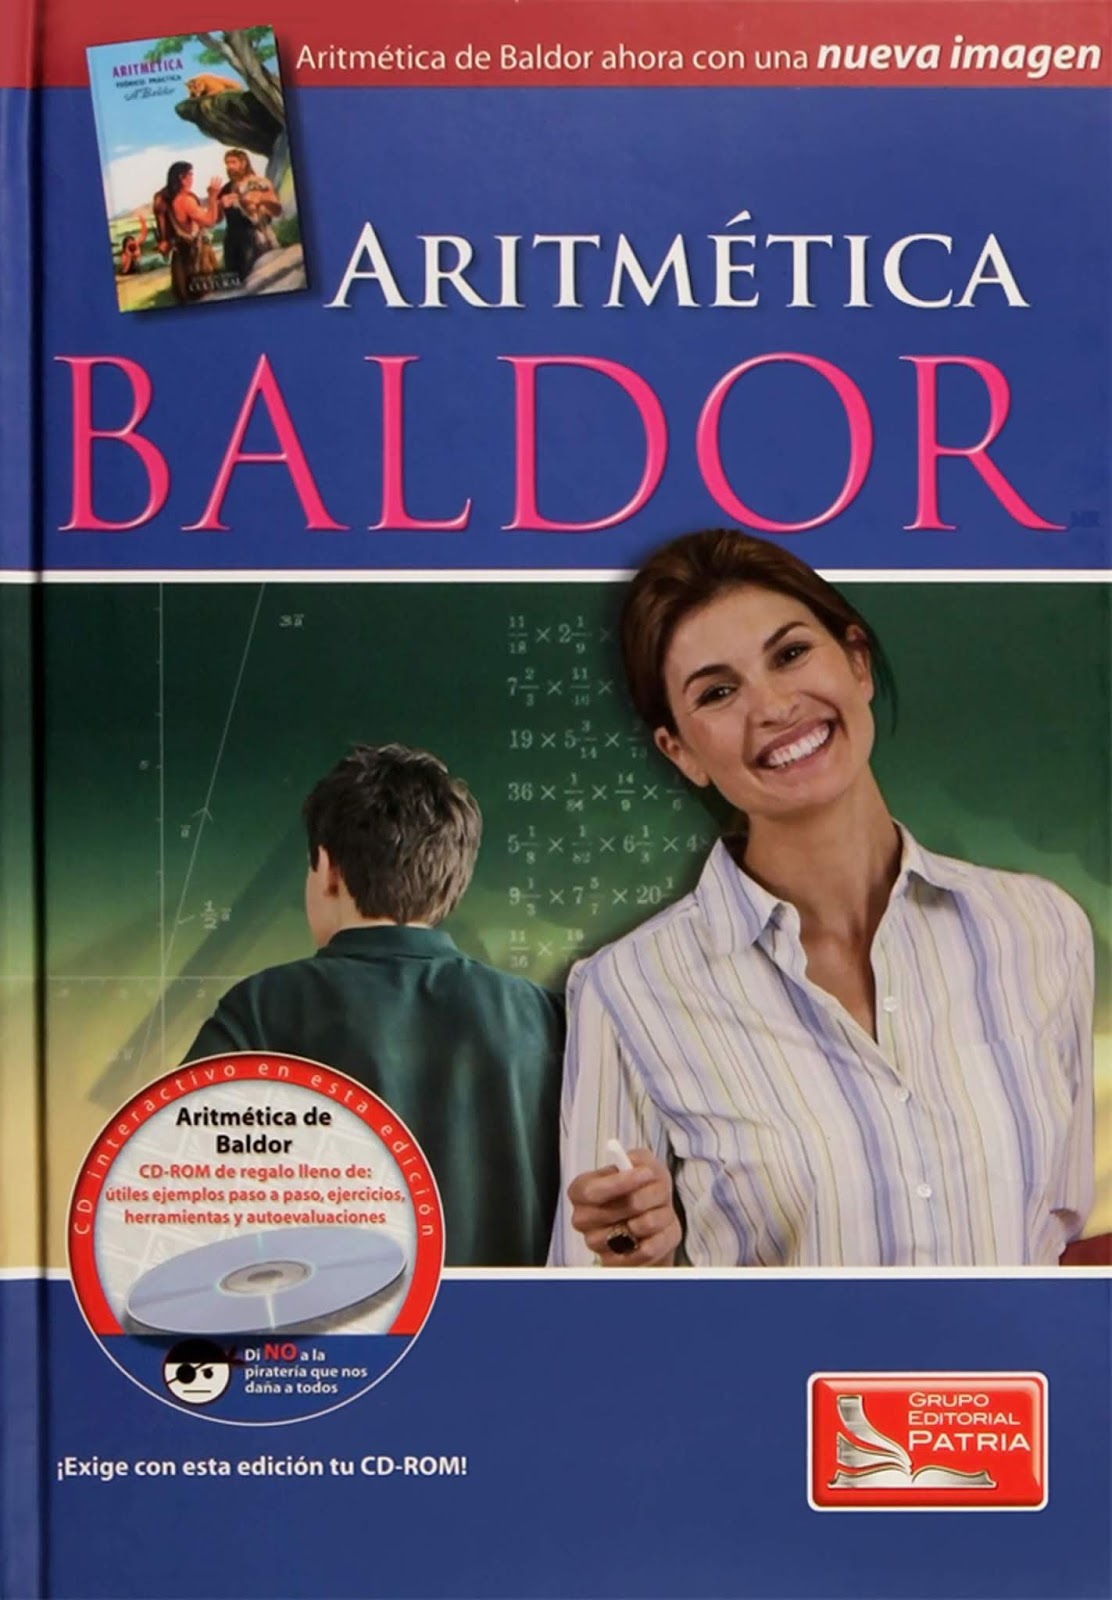 Aritmética | Colección Baldor (NUEVA IMAGEN) en pdf | Tu Rincón de